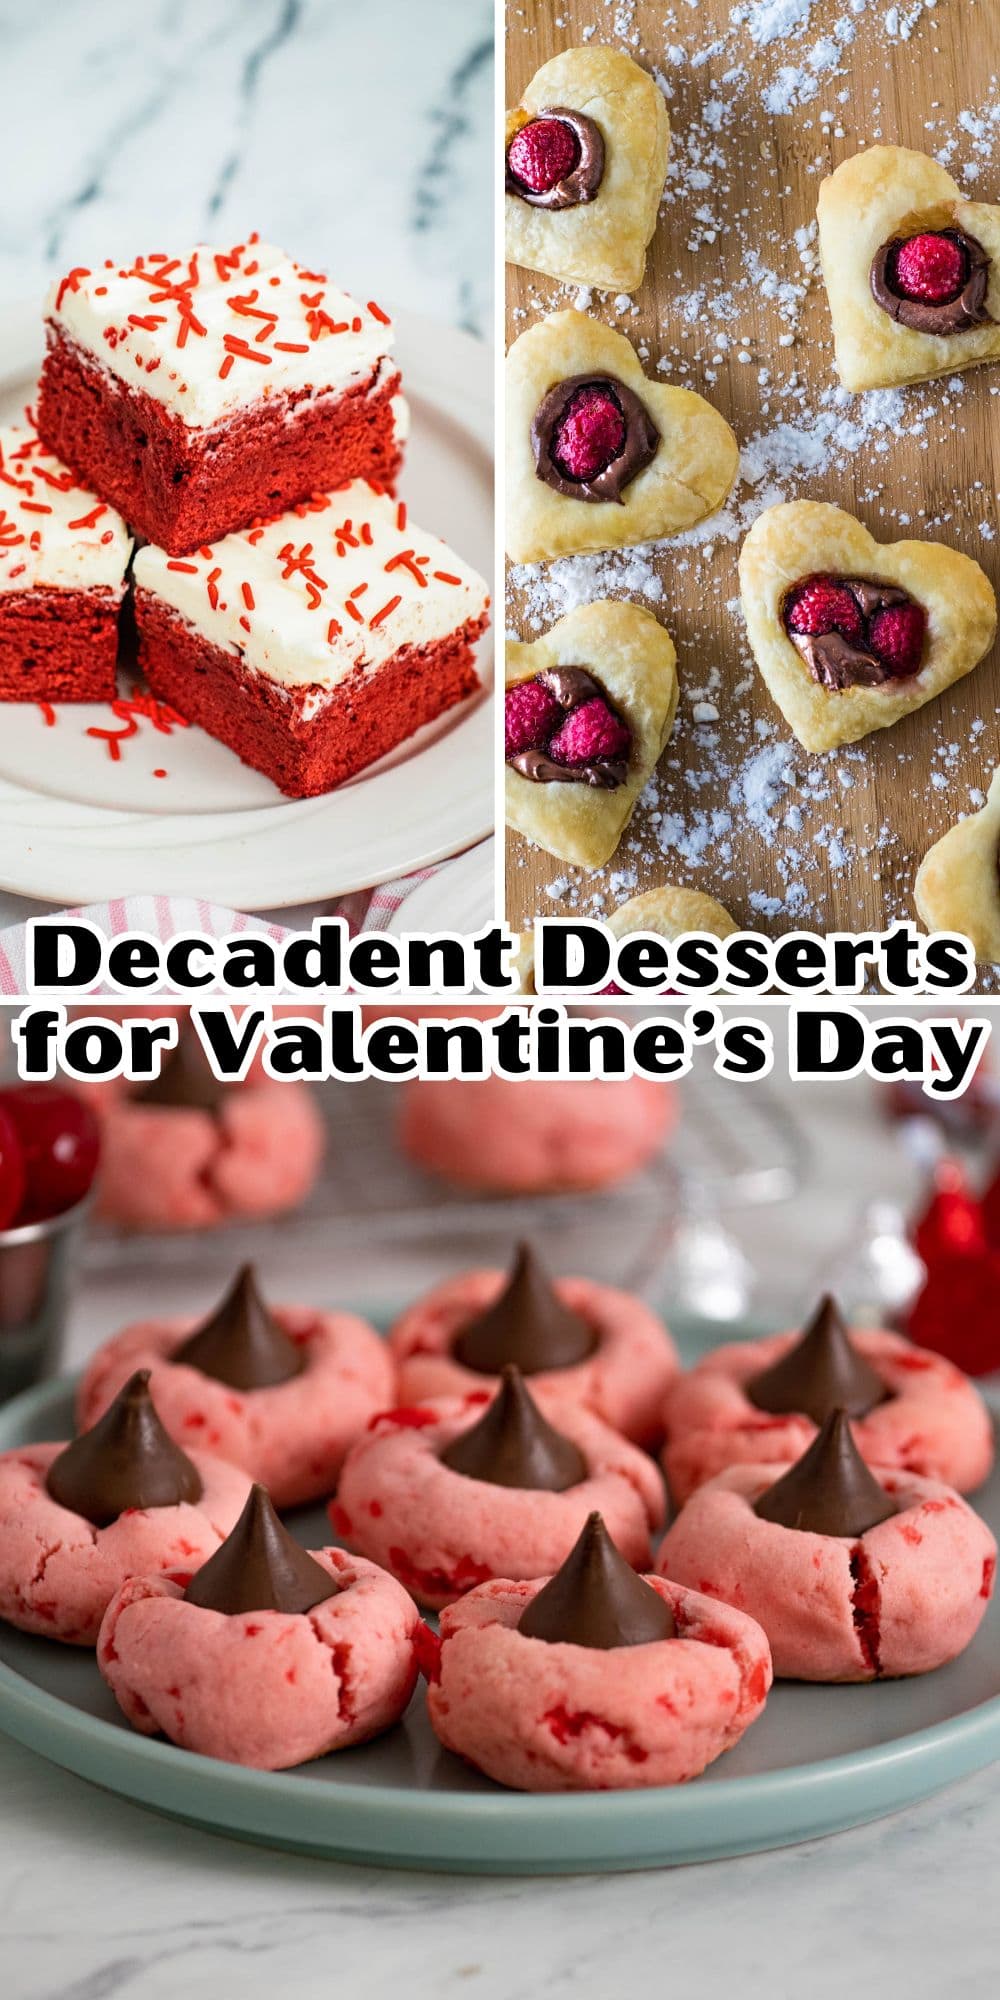 Decadent desserts for valentine's day.